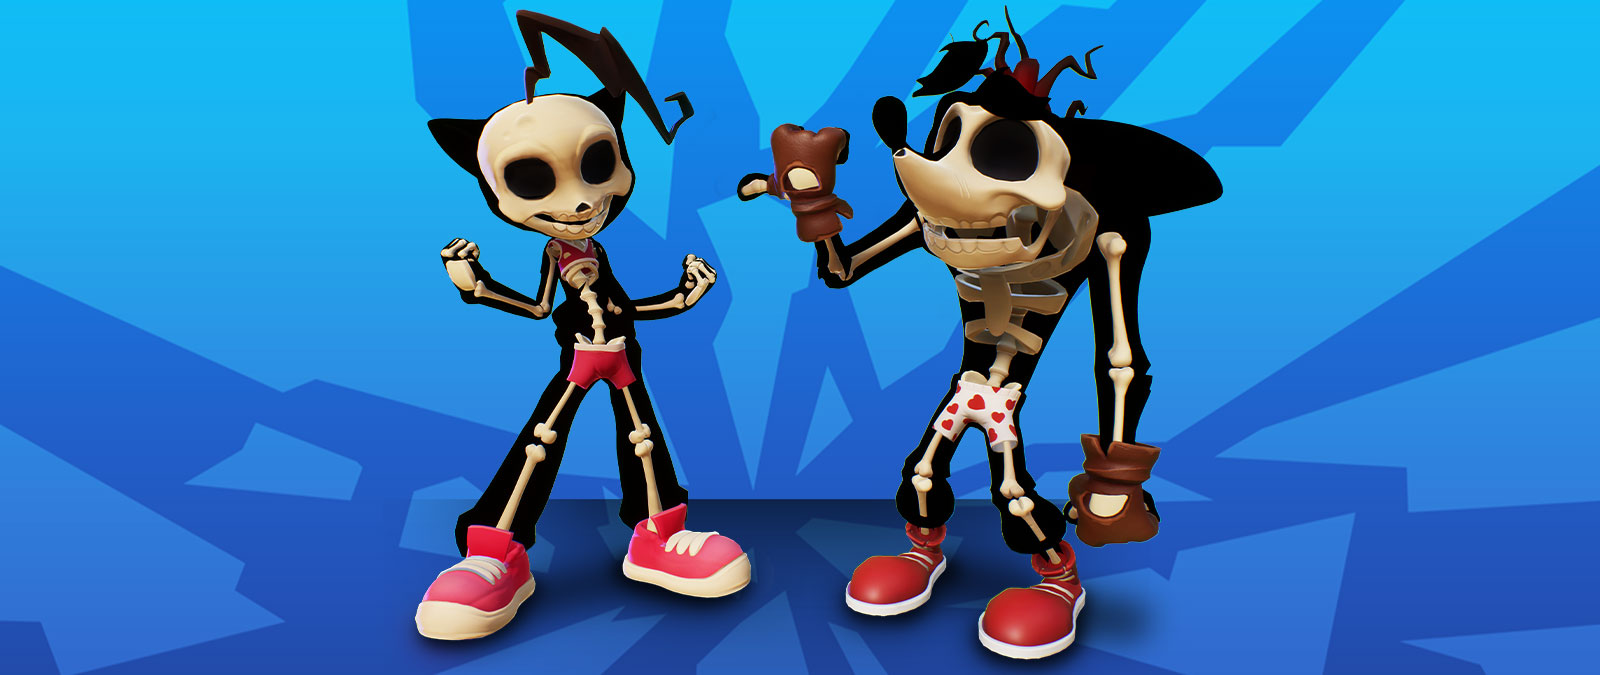 Crash e Coco in versione scheletrica con addosso la biancheria intima.